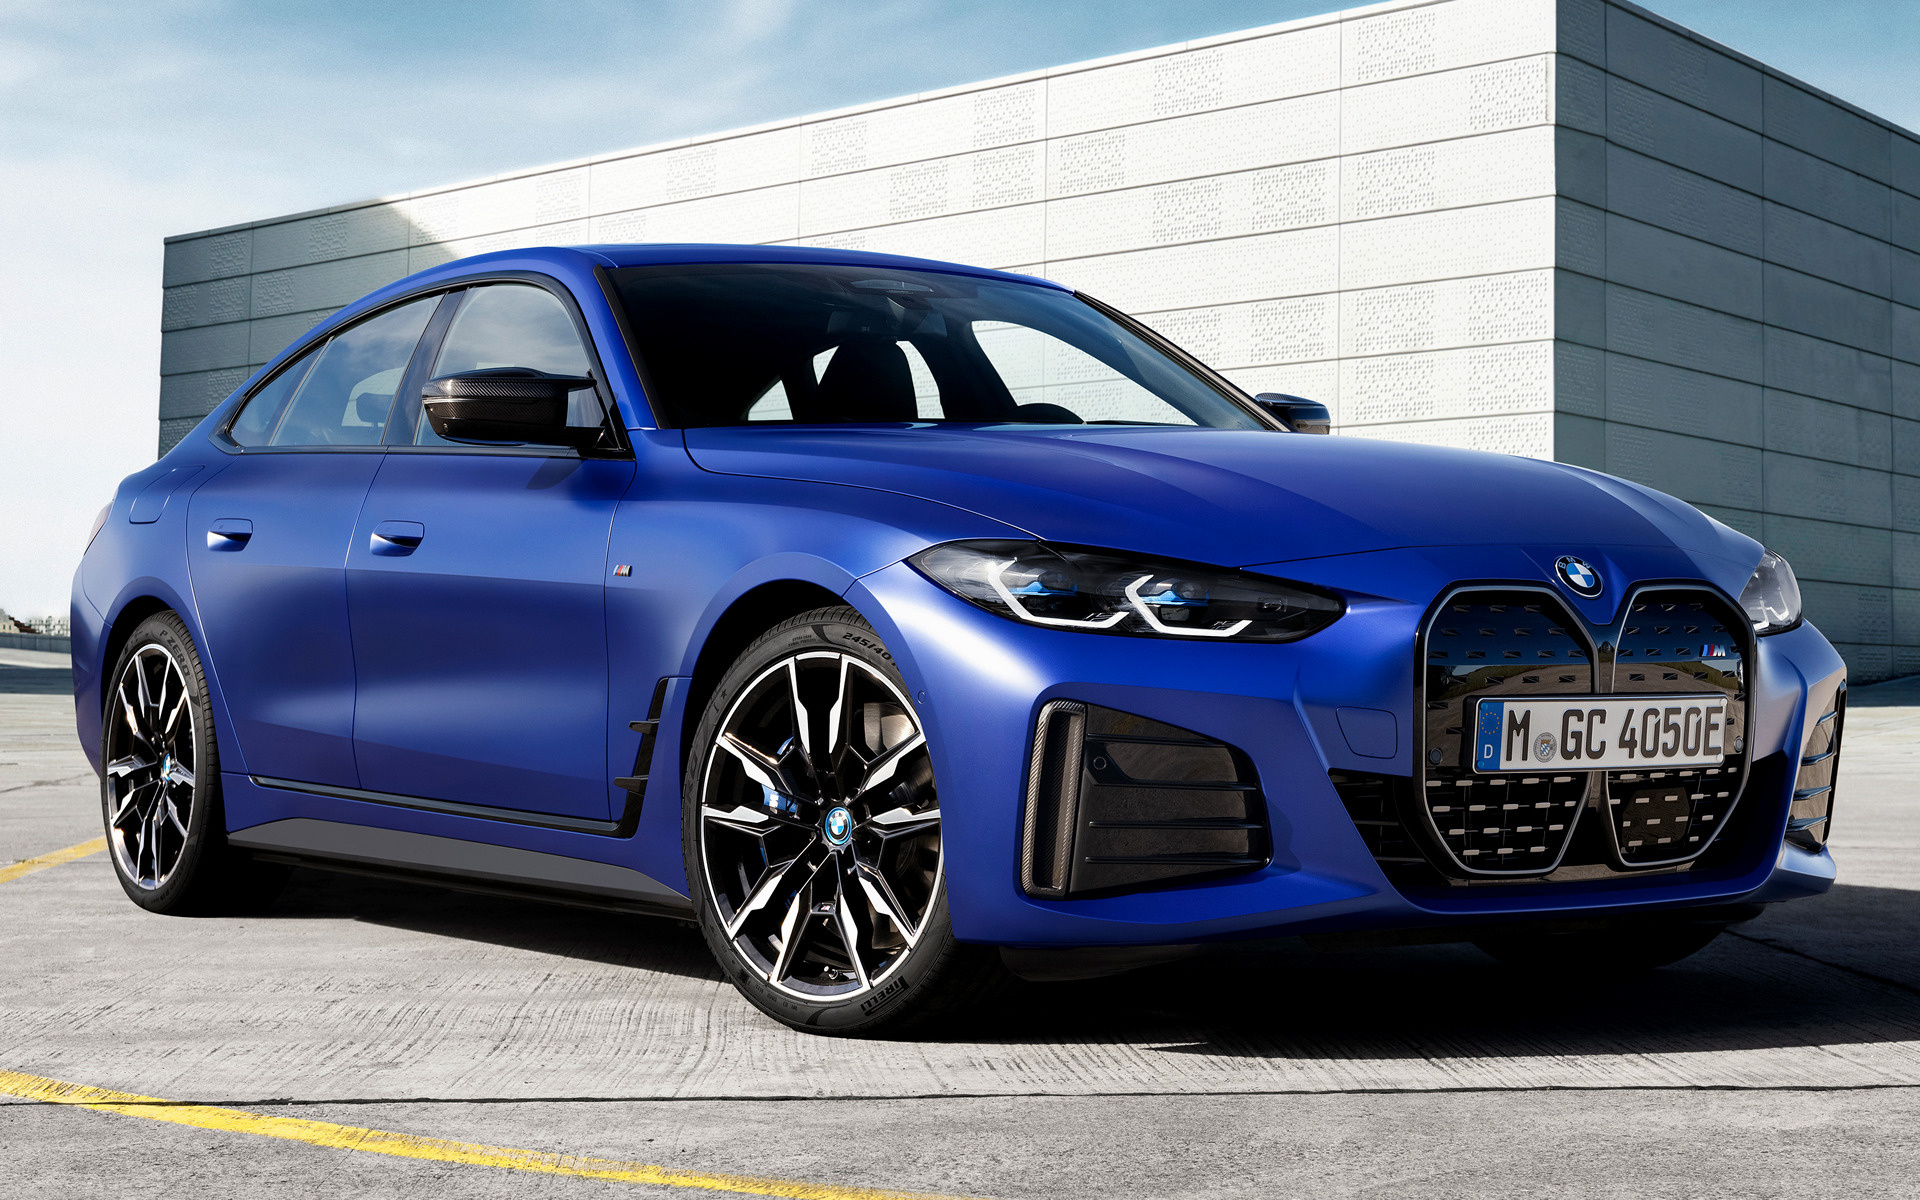 BMW i4, Electric luxury car, Futuristic design, Cutting-edge technology, 1920x1200 HD Desktop